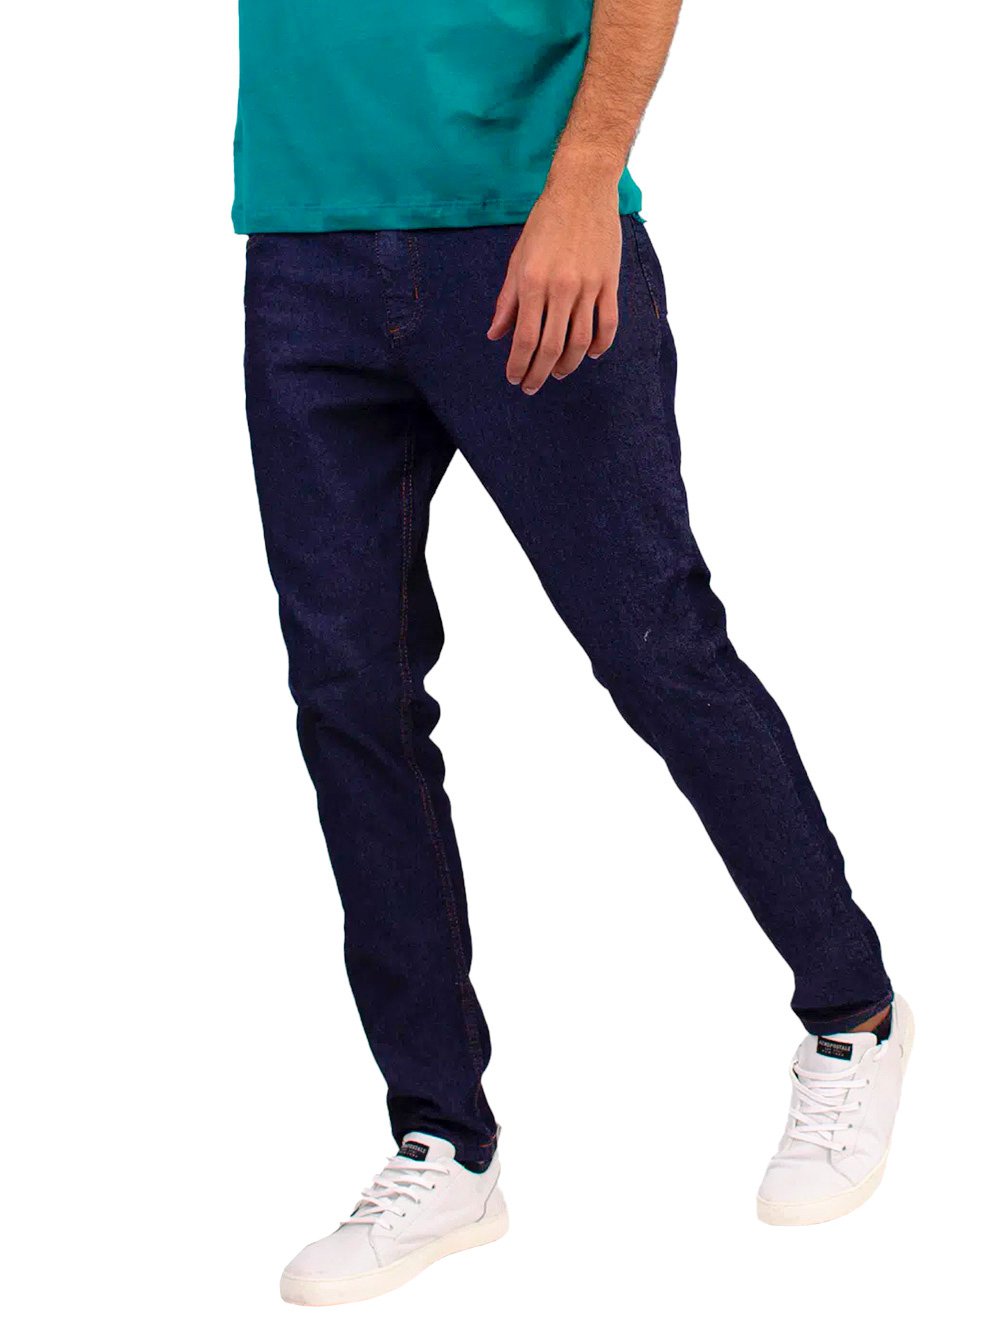 Calça Aeropostale Jeans Masculina Skinny Blue Escura